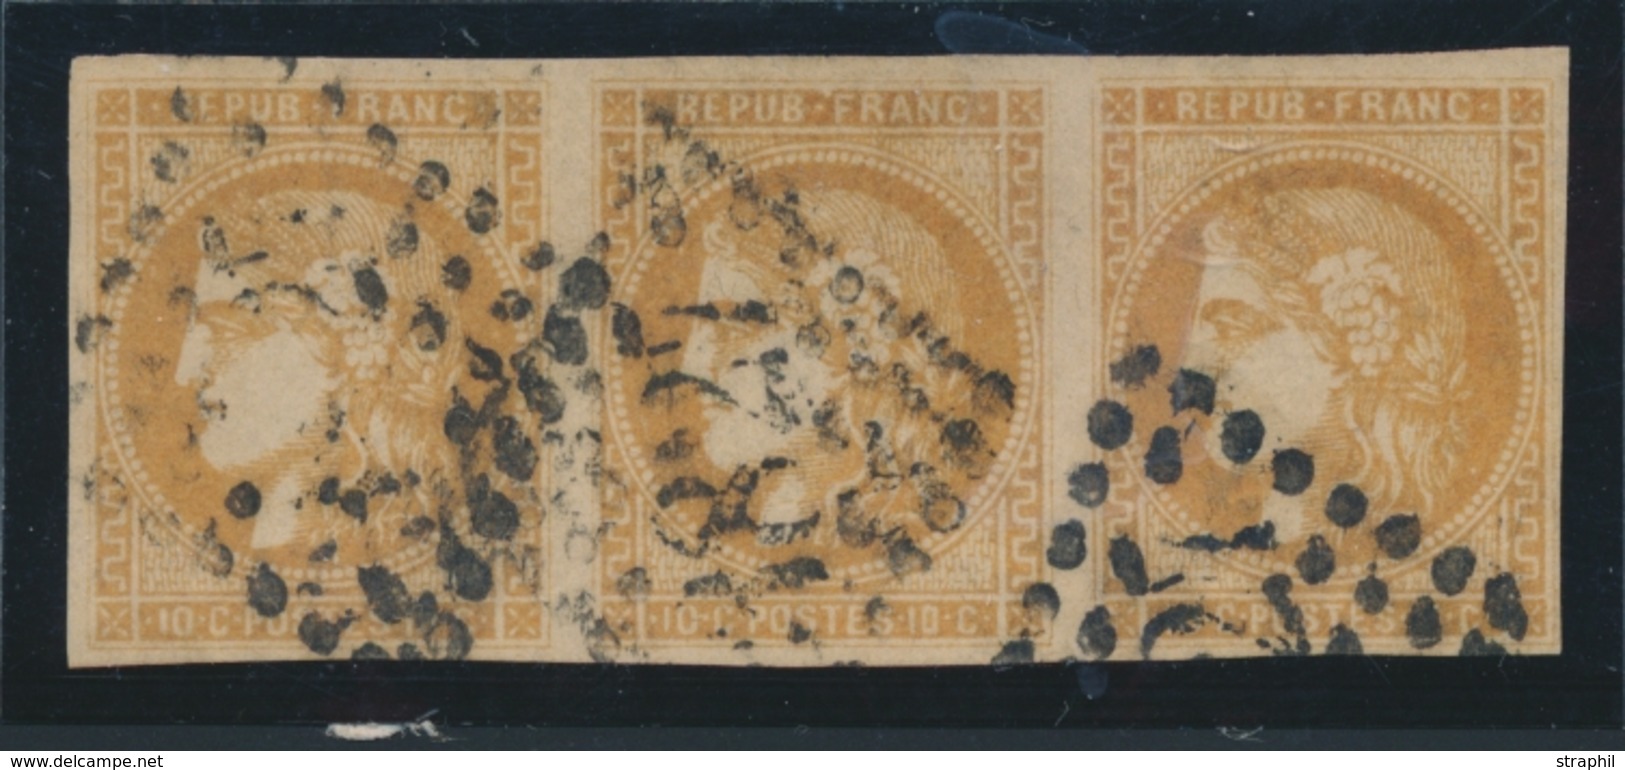 O EMISSION DE BORDEAUX - O - N°43B - Bistre Brun - Bde Horizontale De 3 - Signé Brun - TB - 1870 Bordeaux Printing